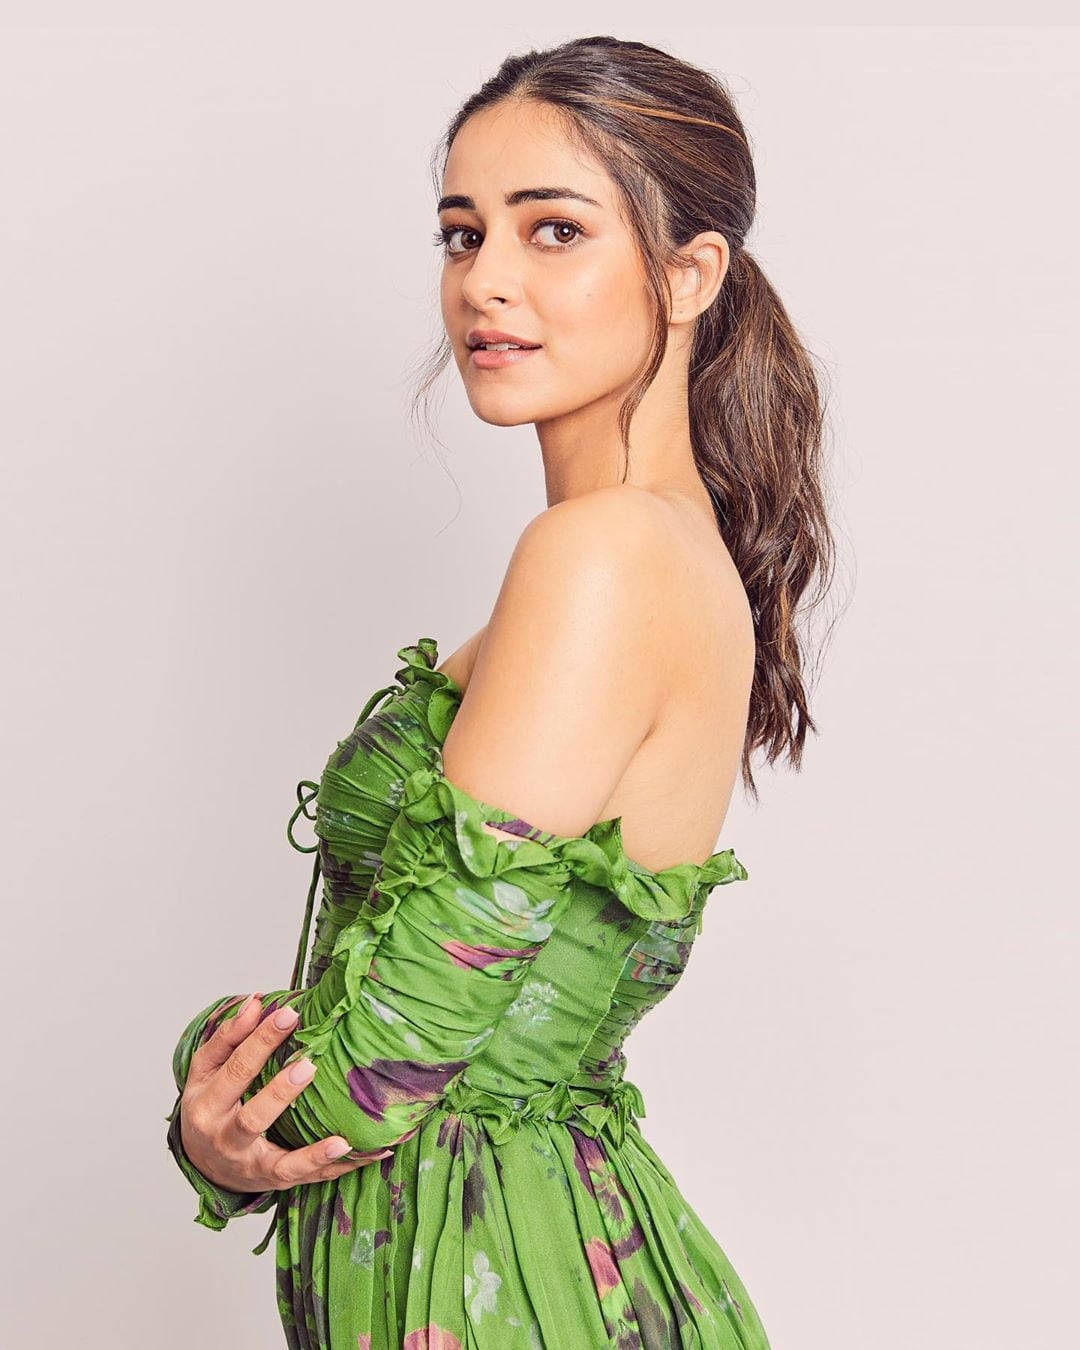 Ananya Pandey Green Dress Wallpaper